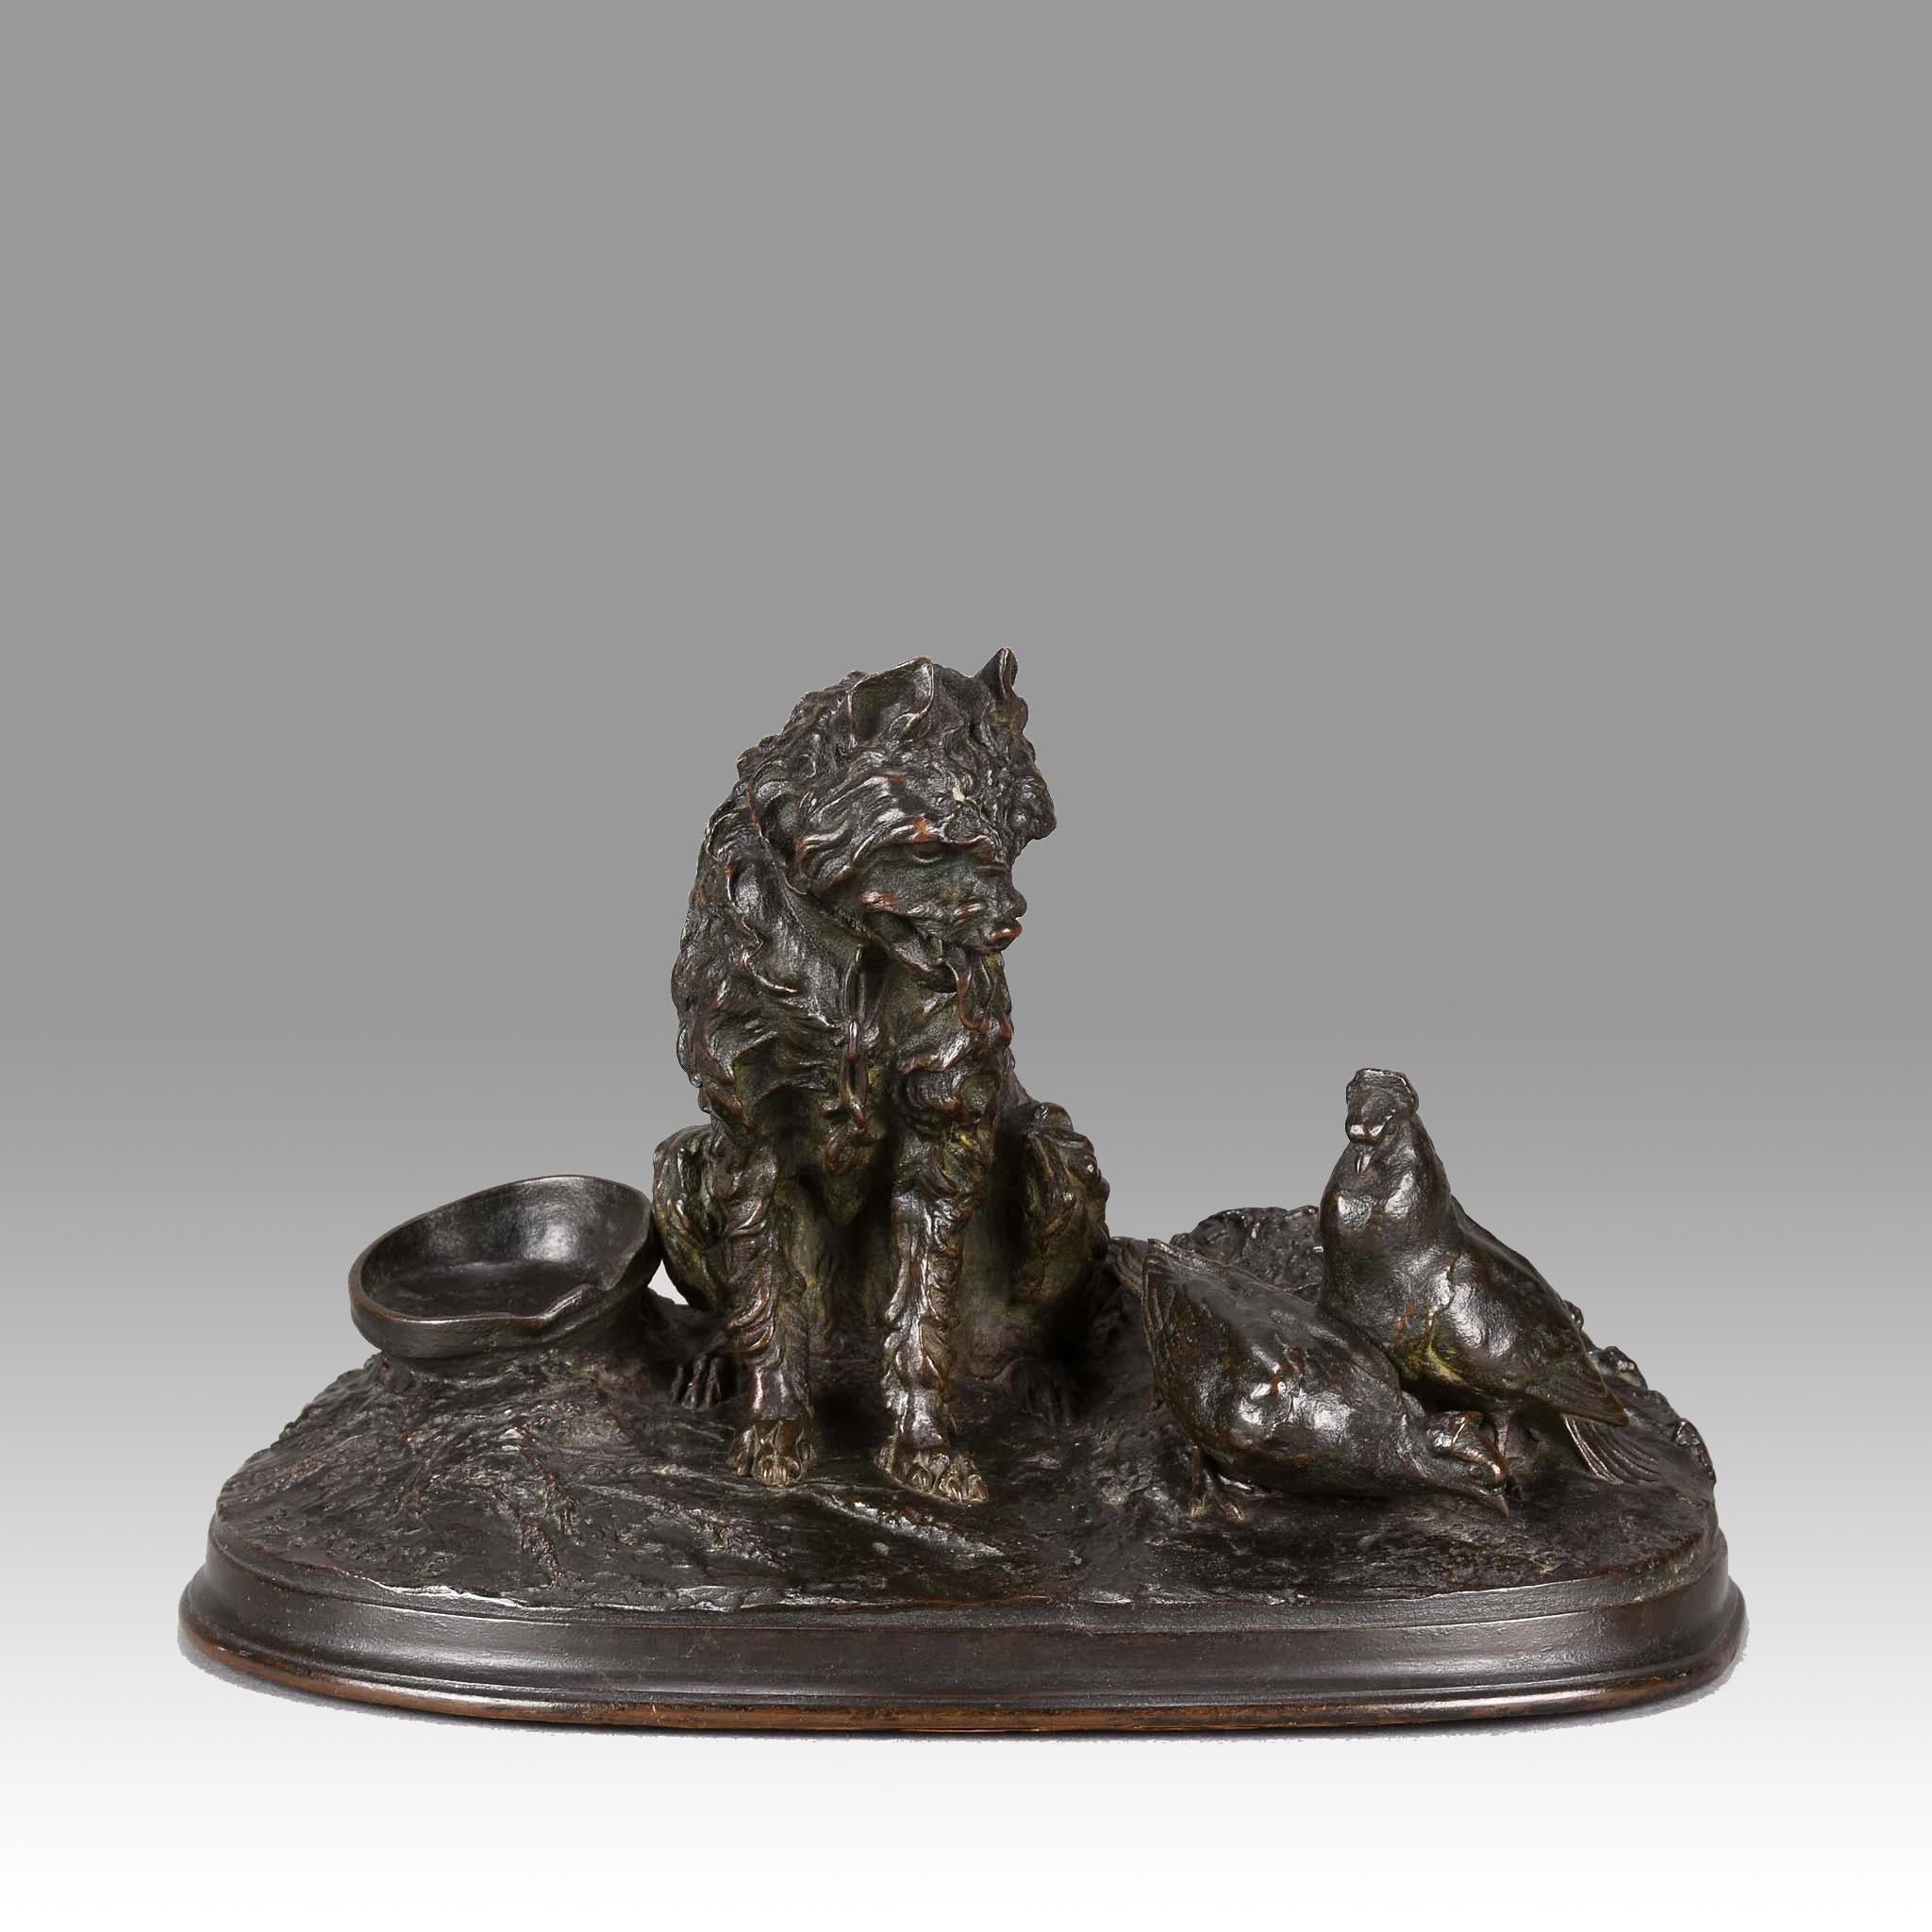 Hervorragende Qualität und sehr seltene französische Animalier-Bronzestudie aus der Mitte des 19. Jahrhunderts mit einem sitzenden Greifhund, der aufmerksam zwei Tauben betrachtet, die neben ihm fressen. Die Bronze mit ausgezeichneten